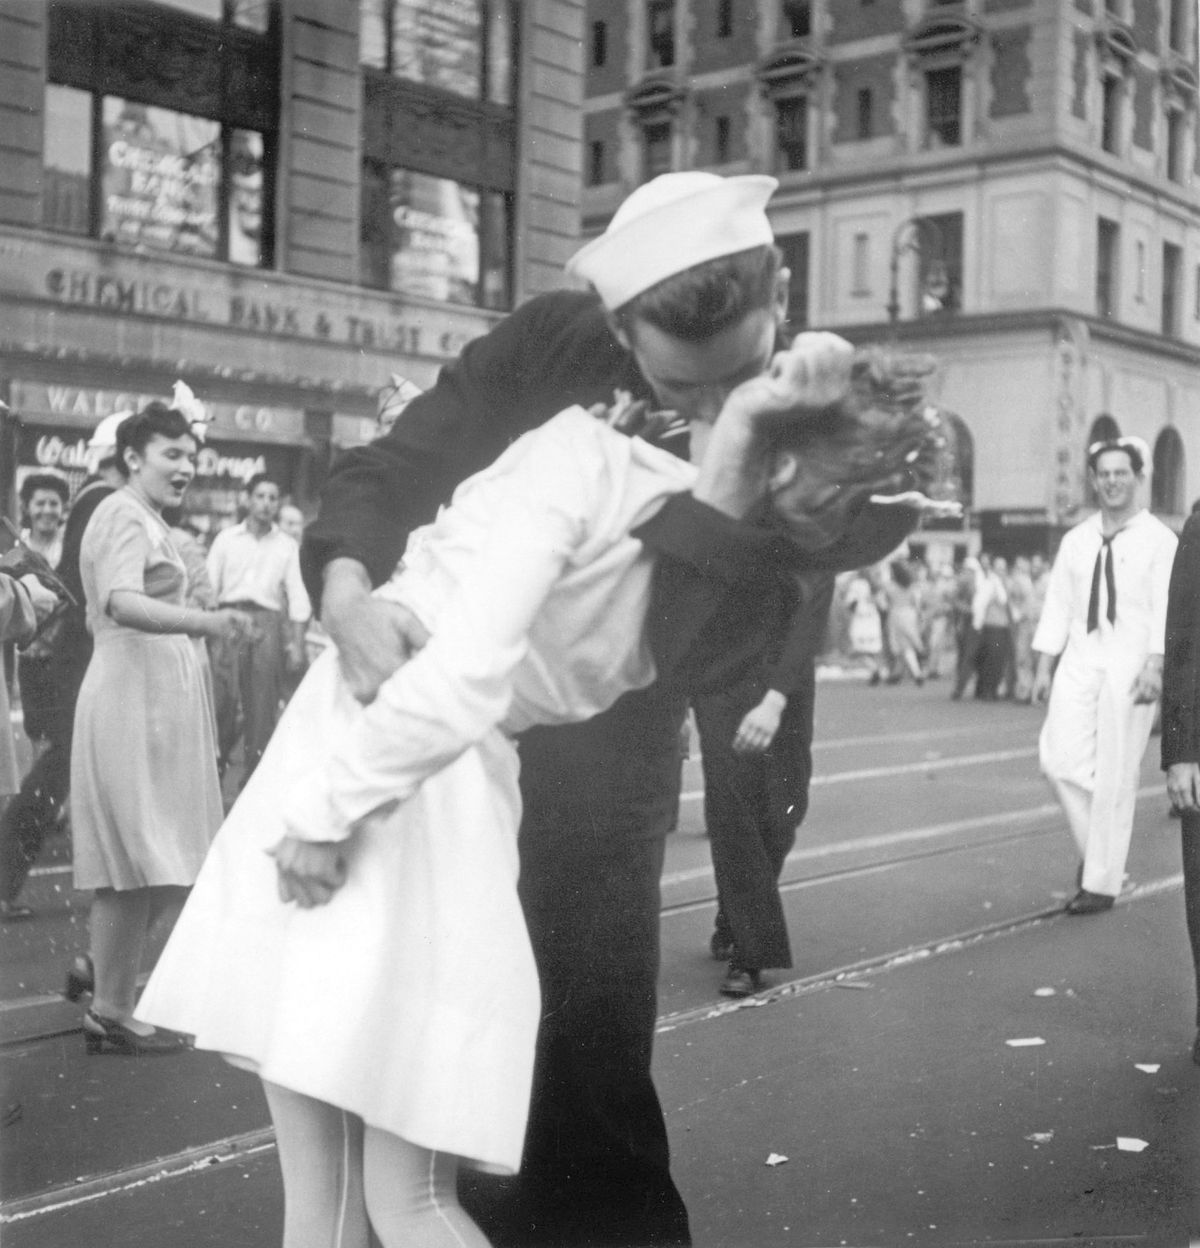 Fotografie ze 14. srpna 1945 zachycuje spontánní radost lidí po skončení druhé světové války. Alfred Eisenstaedt ji pořídil na newyorském Times Square.